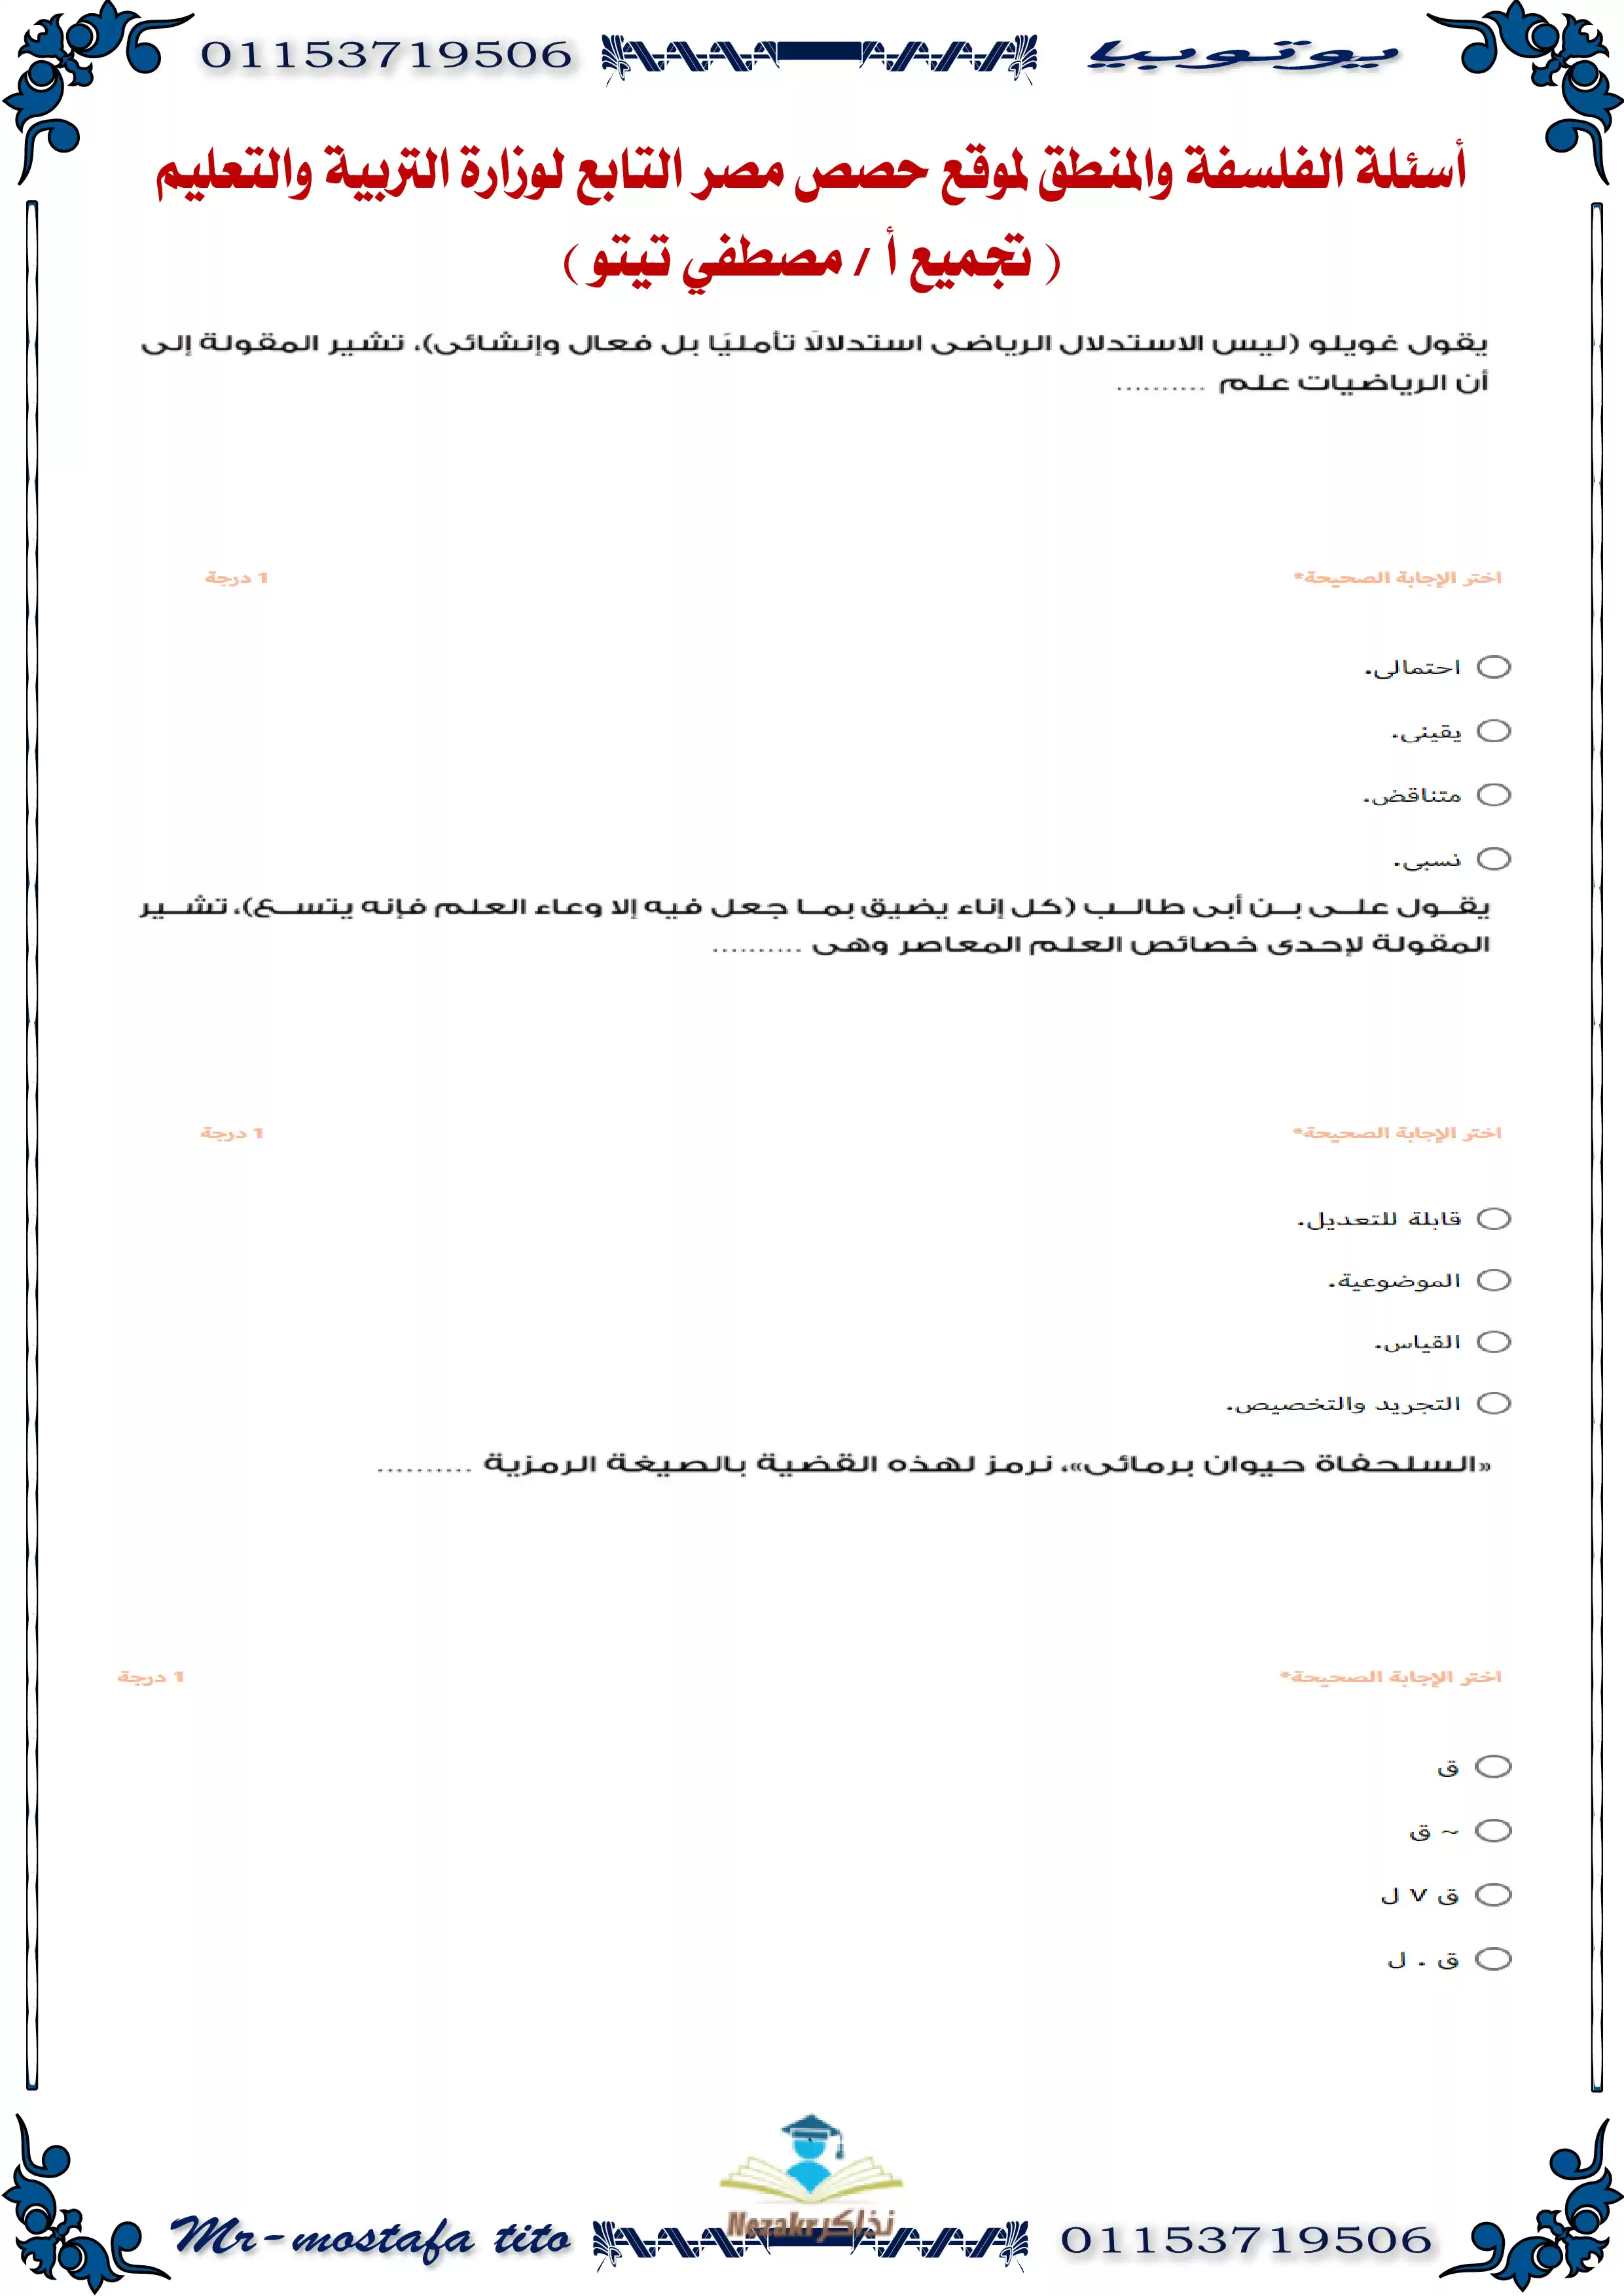 نماذج امتحانات منصة حصص مصر في الفلسفة والمنطق للصف الثالث الثانوي PDF بالاجابات